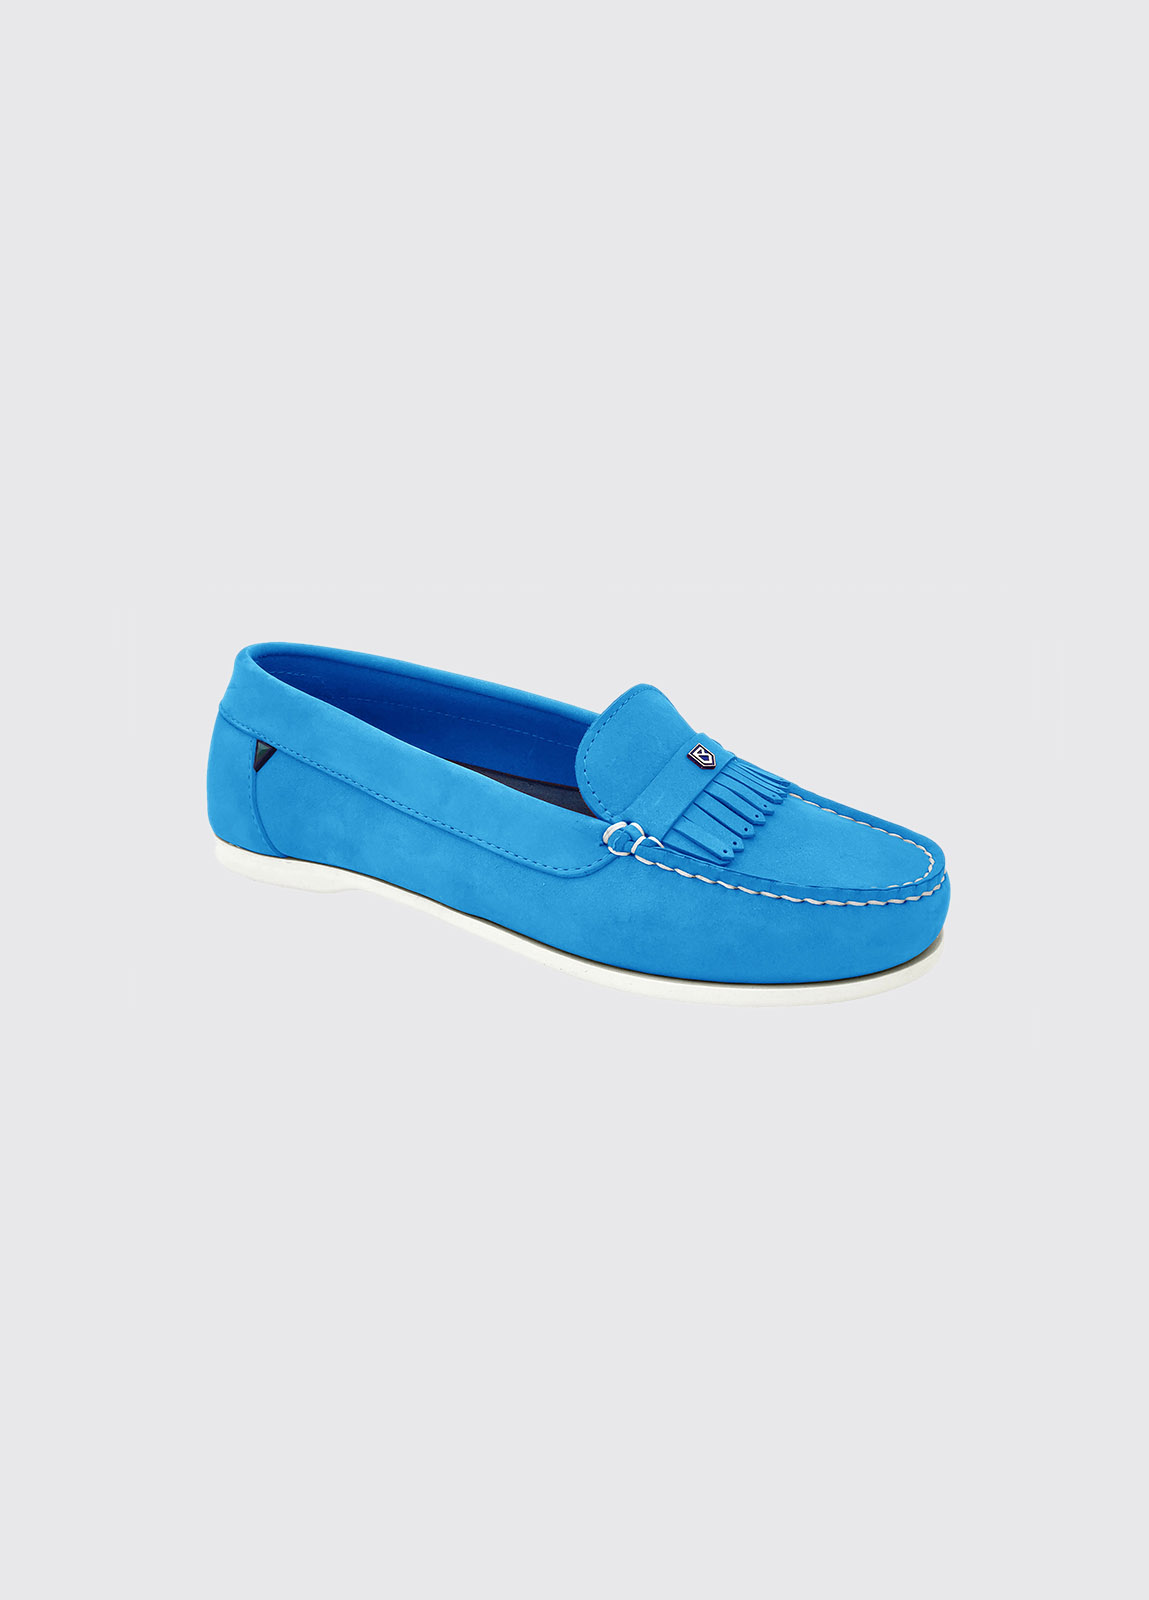 Florence Deck Shoe - Blue Mist - Size EU 38